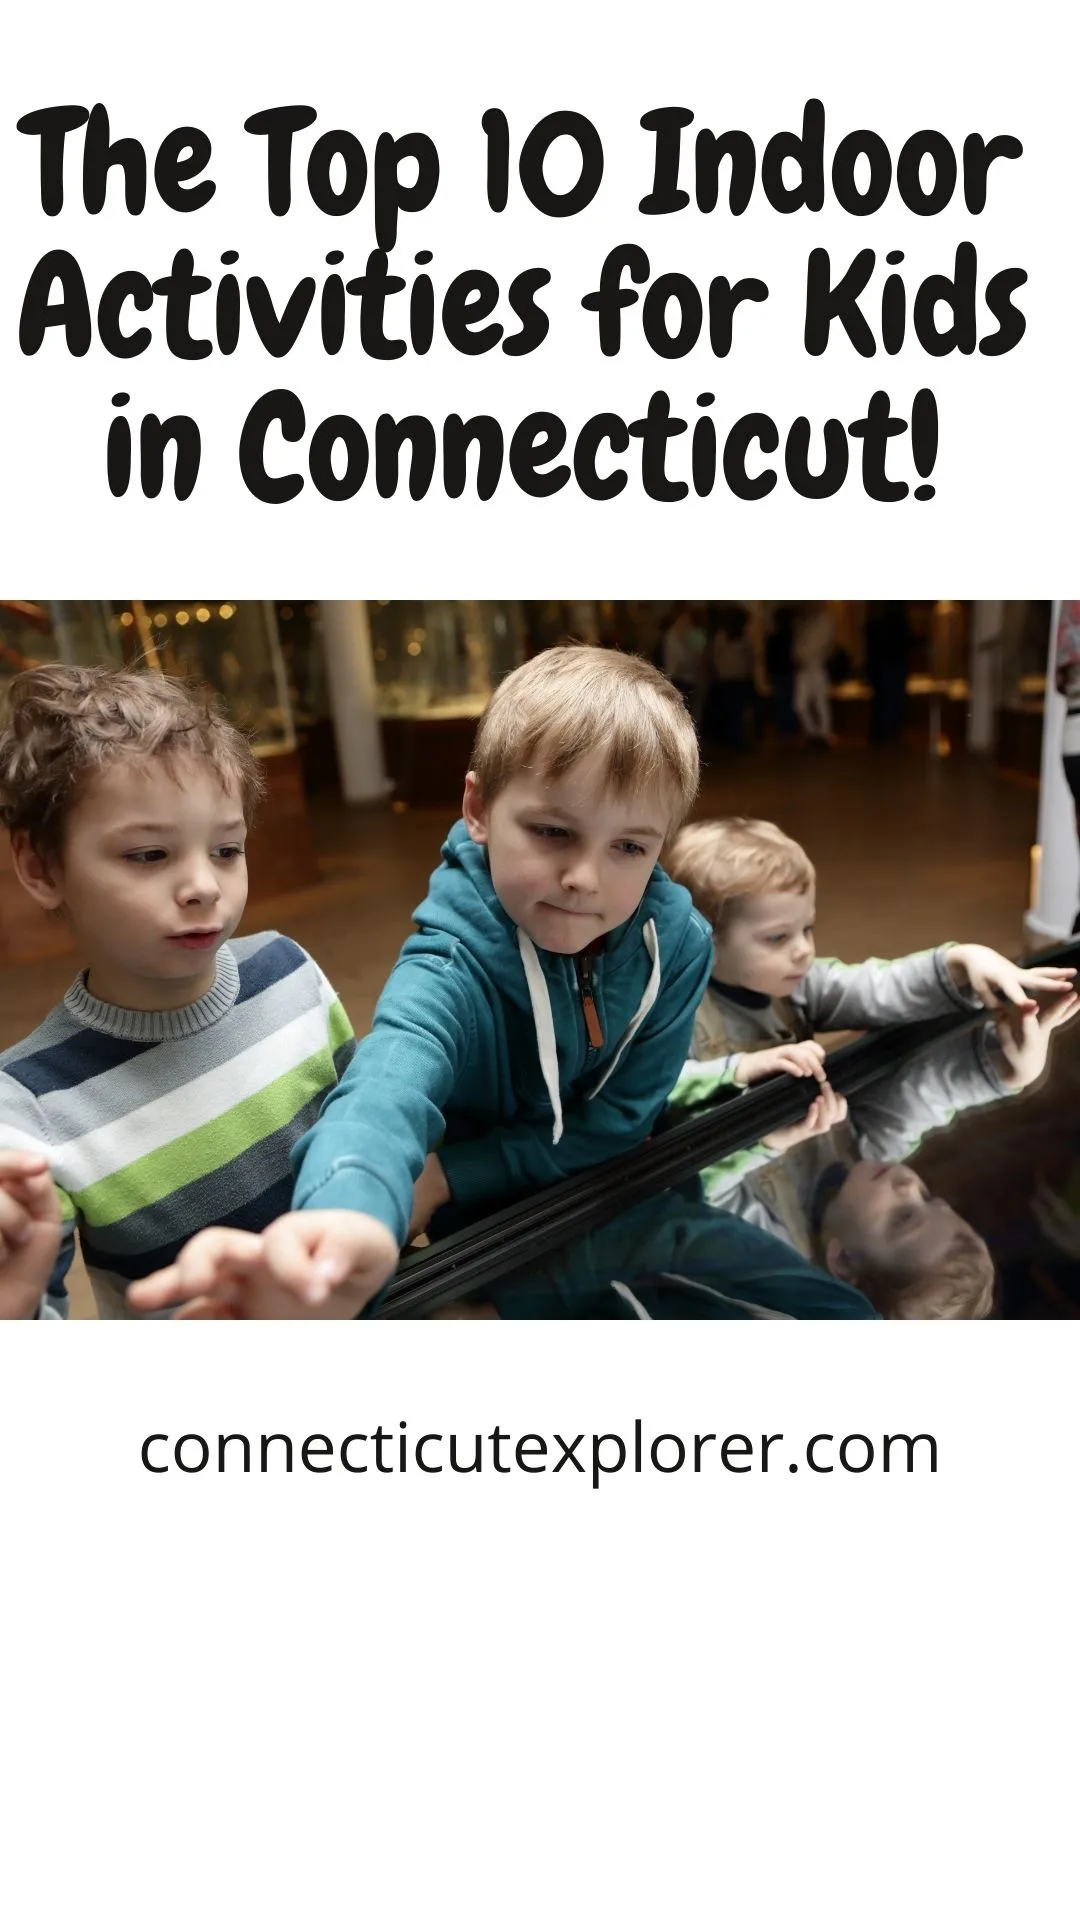 10 indoor activities for kids in connecticut pinterest image.